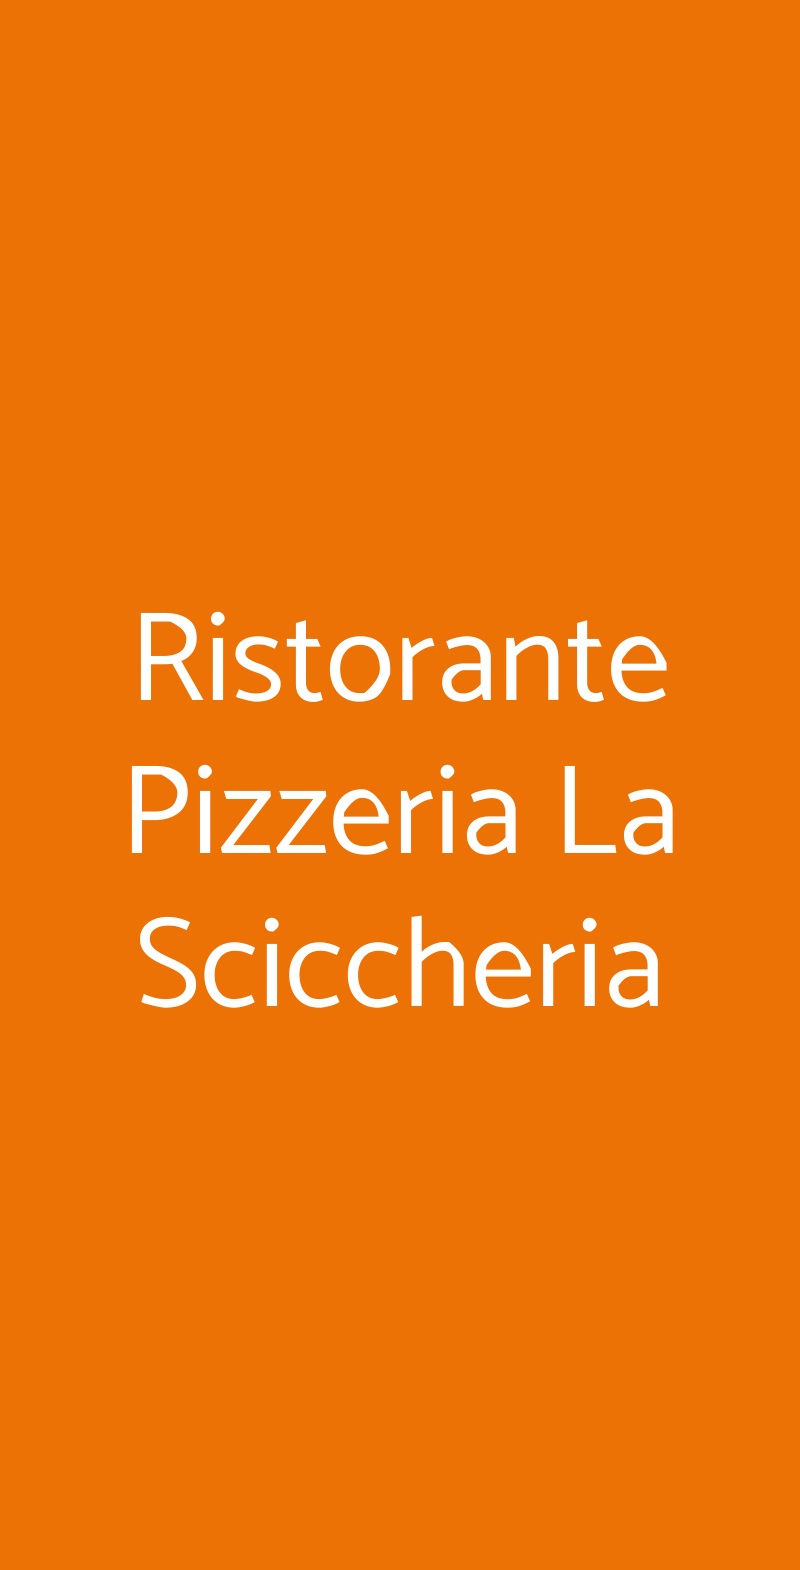 Ristorante Pizzeria La Sciccheria Siracusa menù 1 pagina